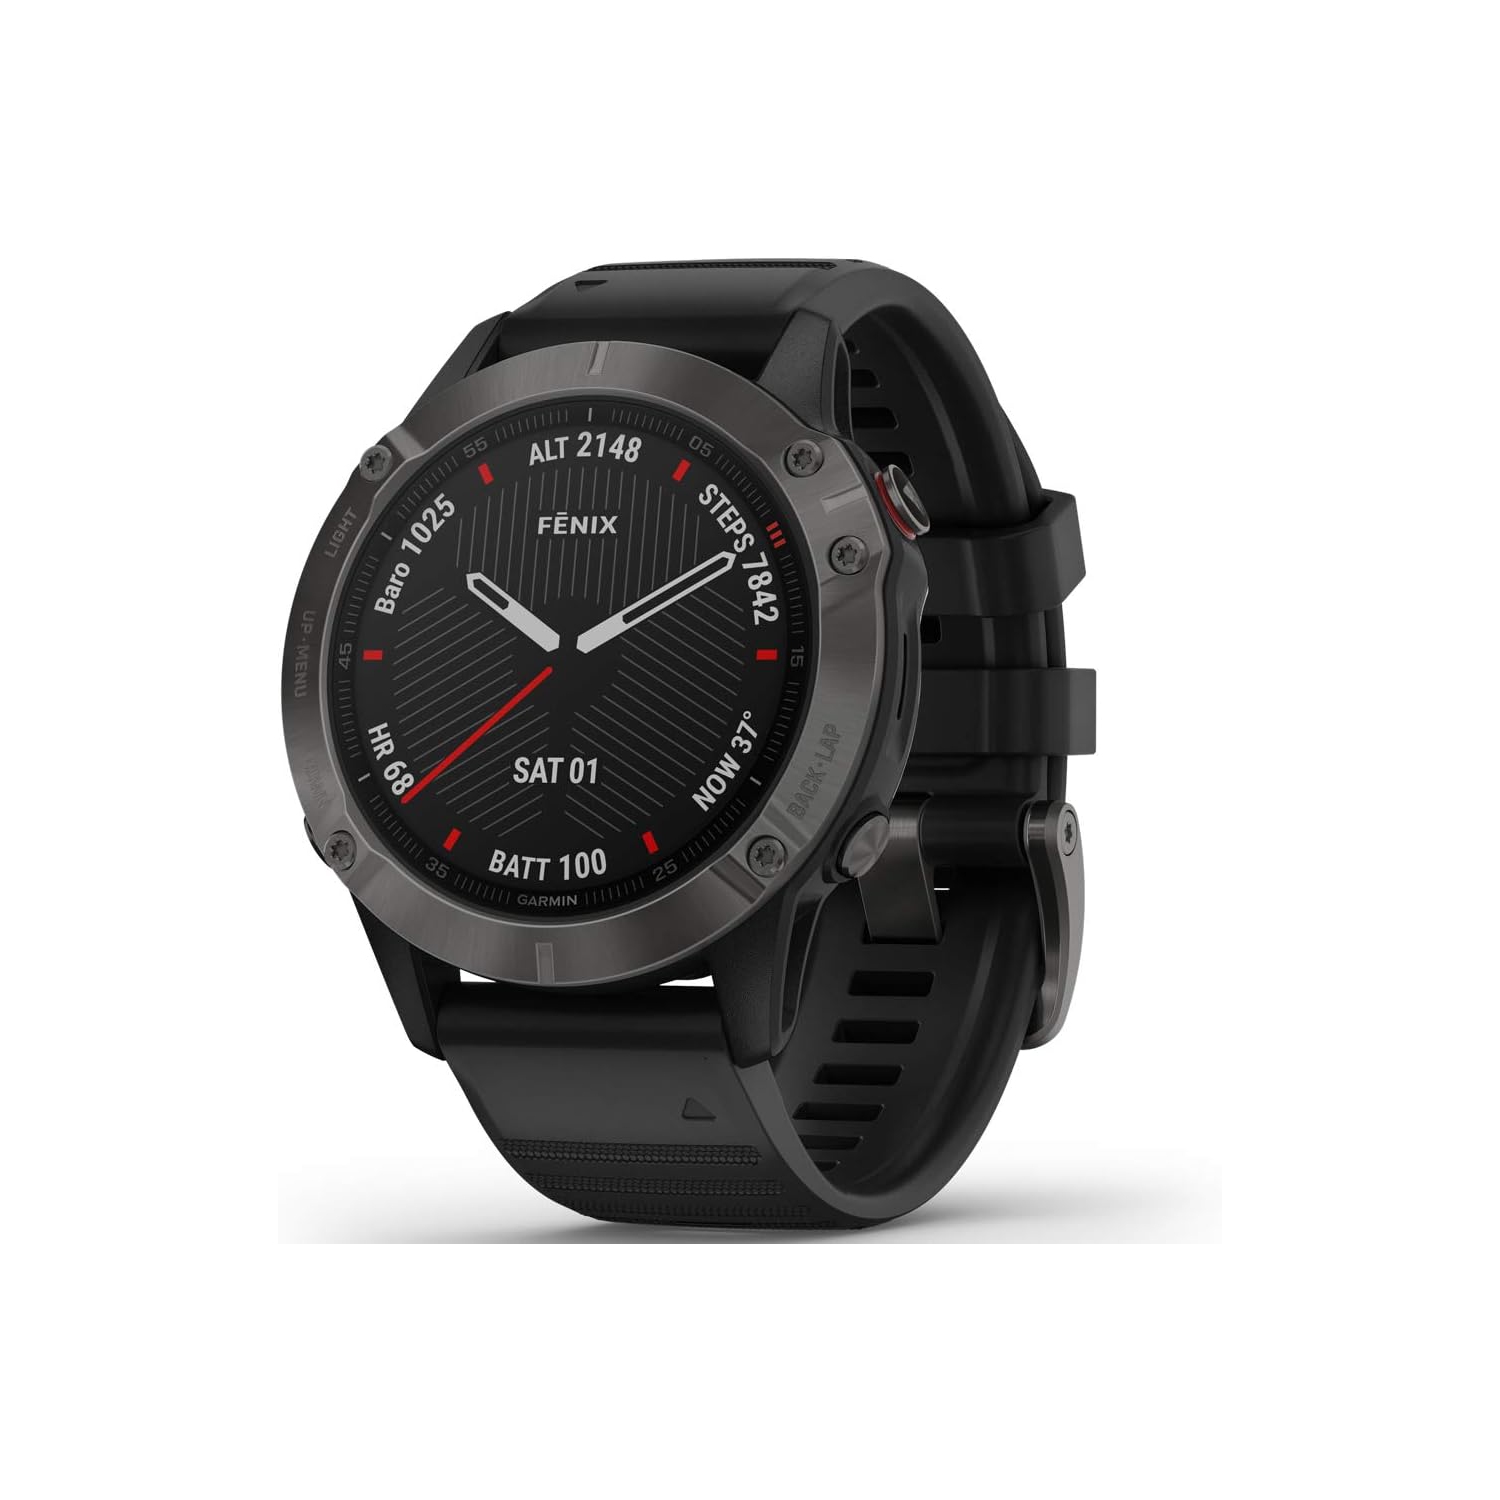 Refurbished(Excellent)- Garmin Fenix 6 Sapphire, Premium Multisport GPS Watch